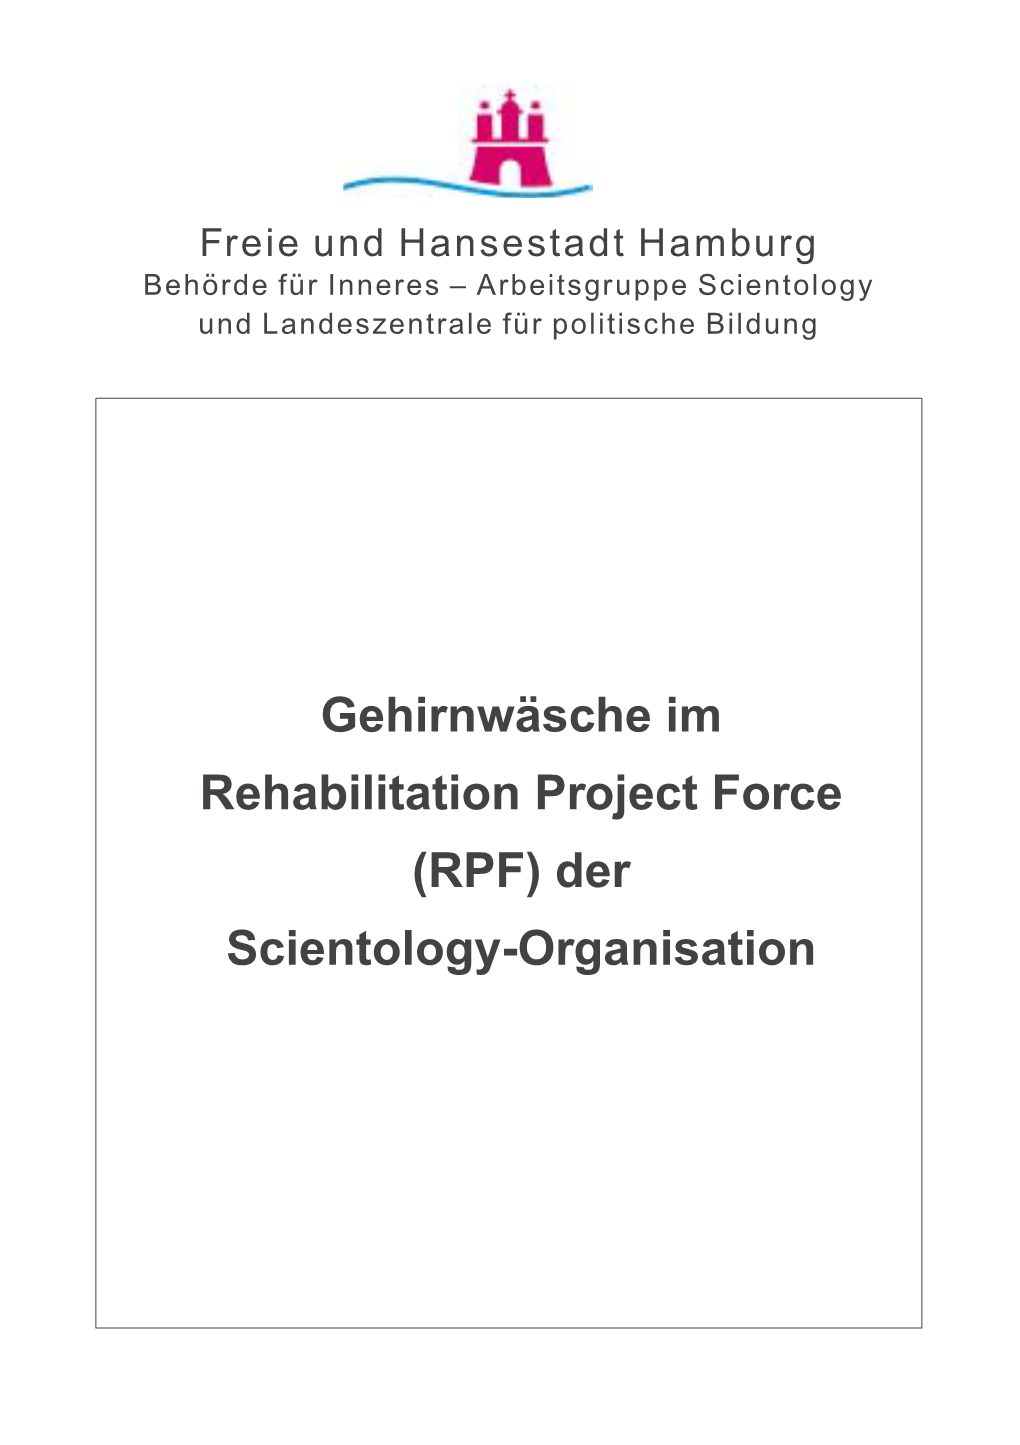 Gehirnwäsche Im Rehabilitation Project Force (RPF) Der Scientology-Organisation